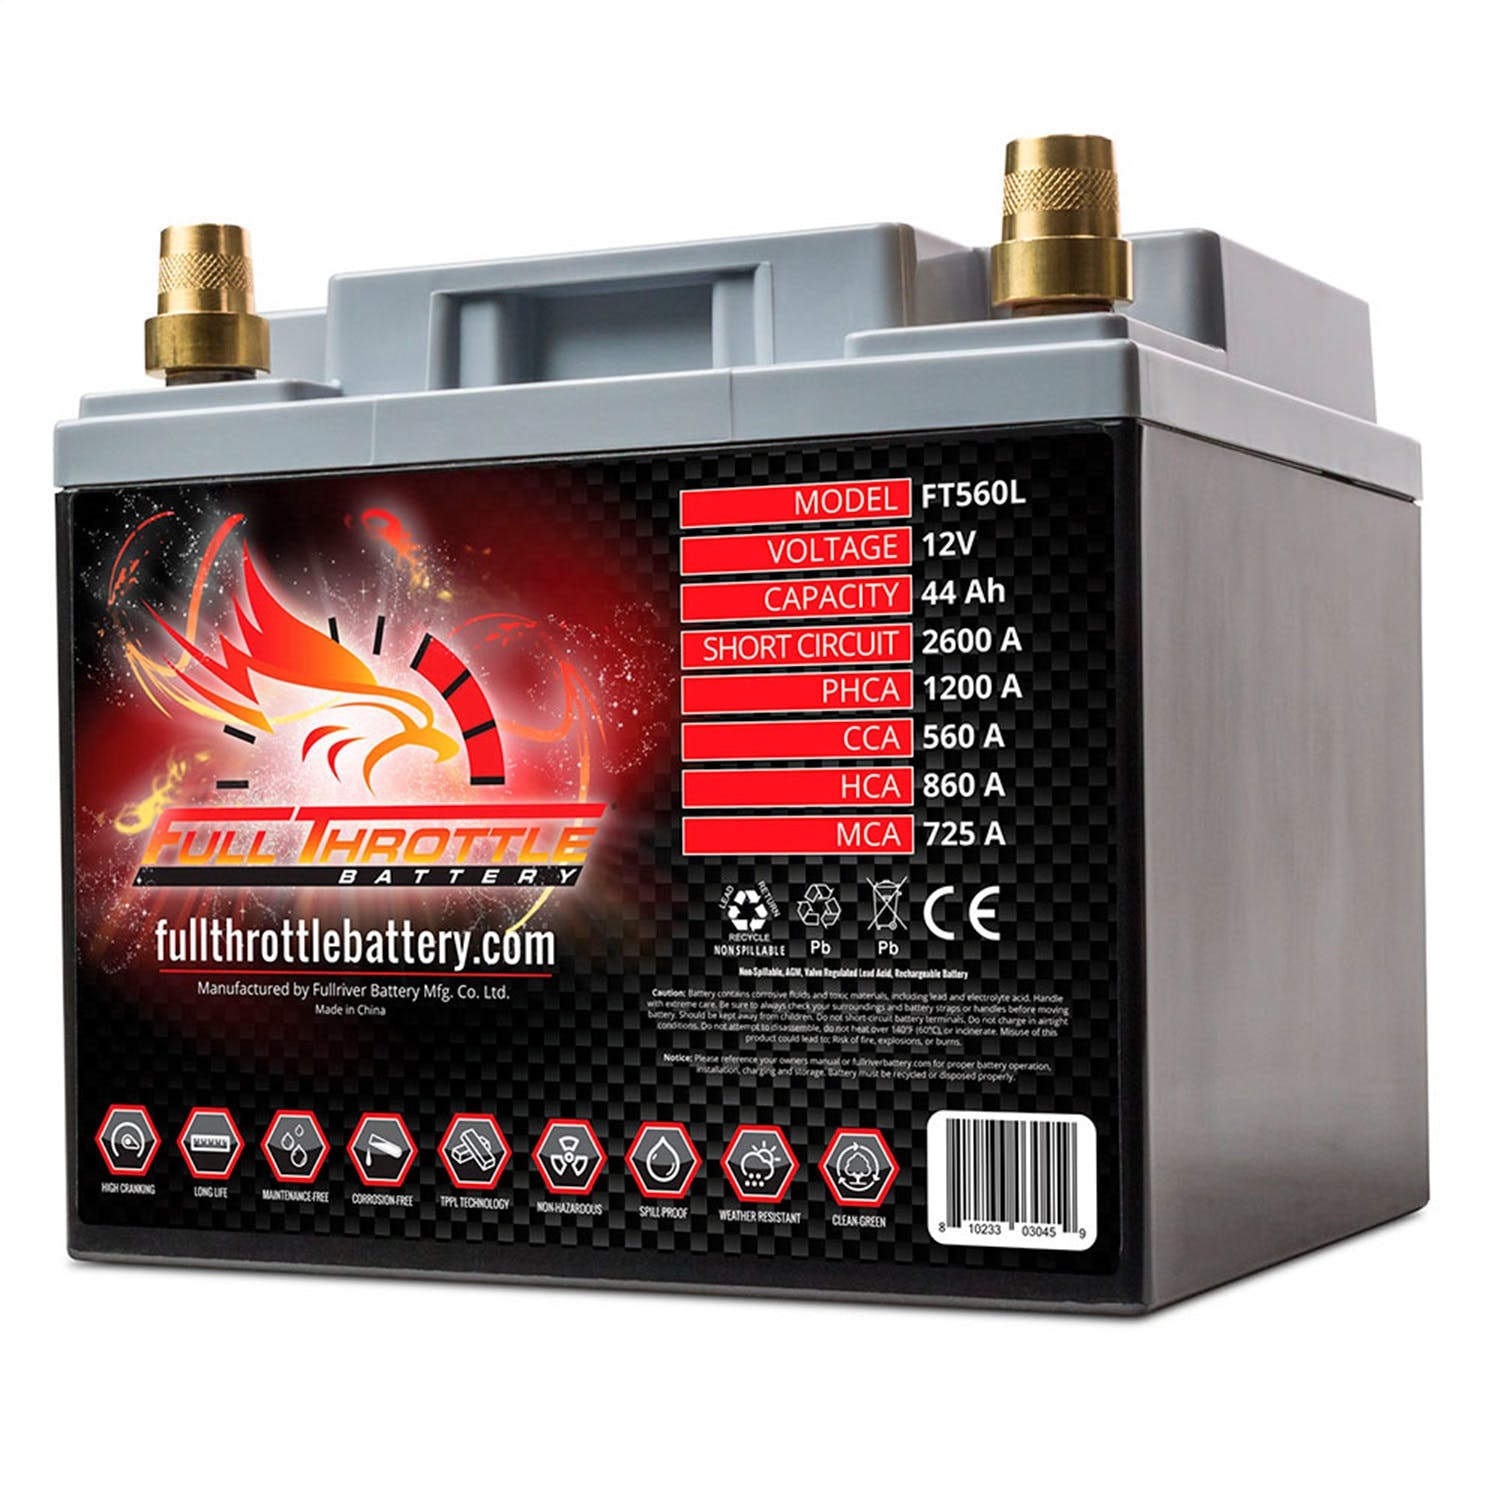 Fullriver Battery FT560L Full Throttle 12V Automotive Battery